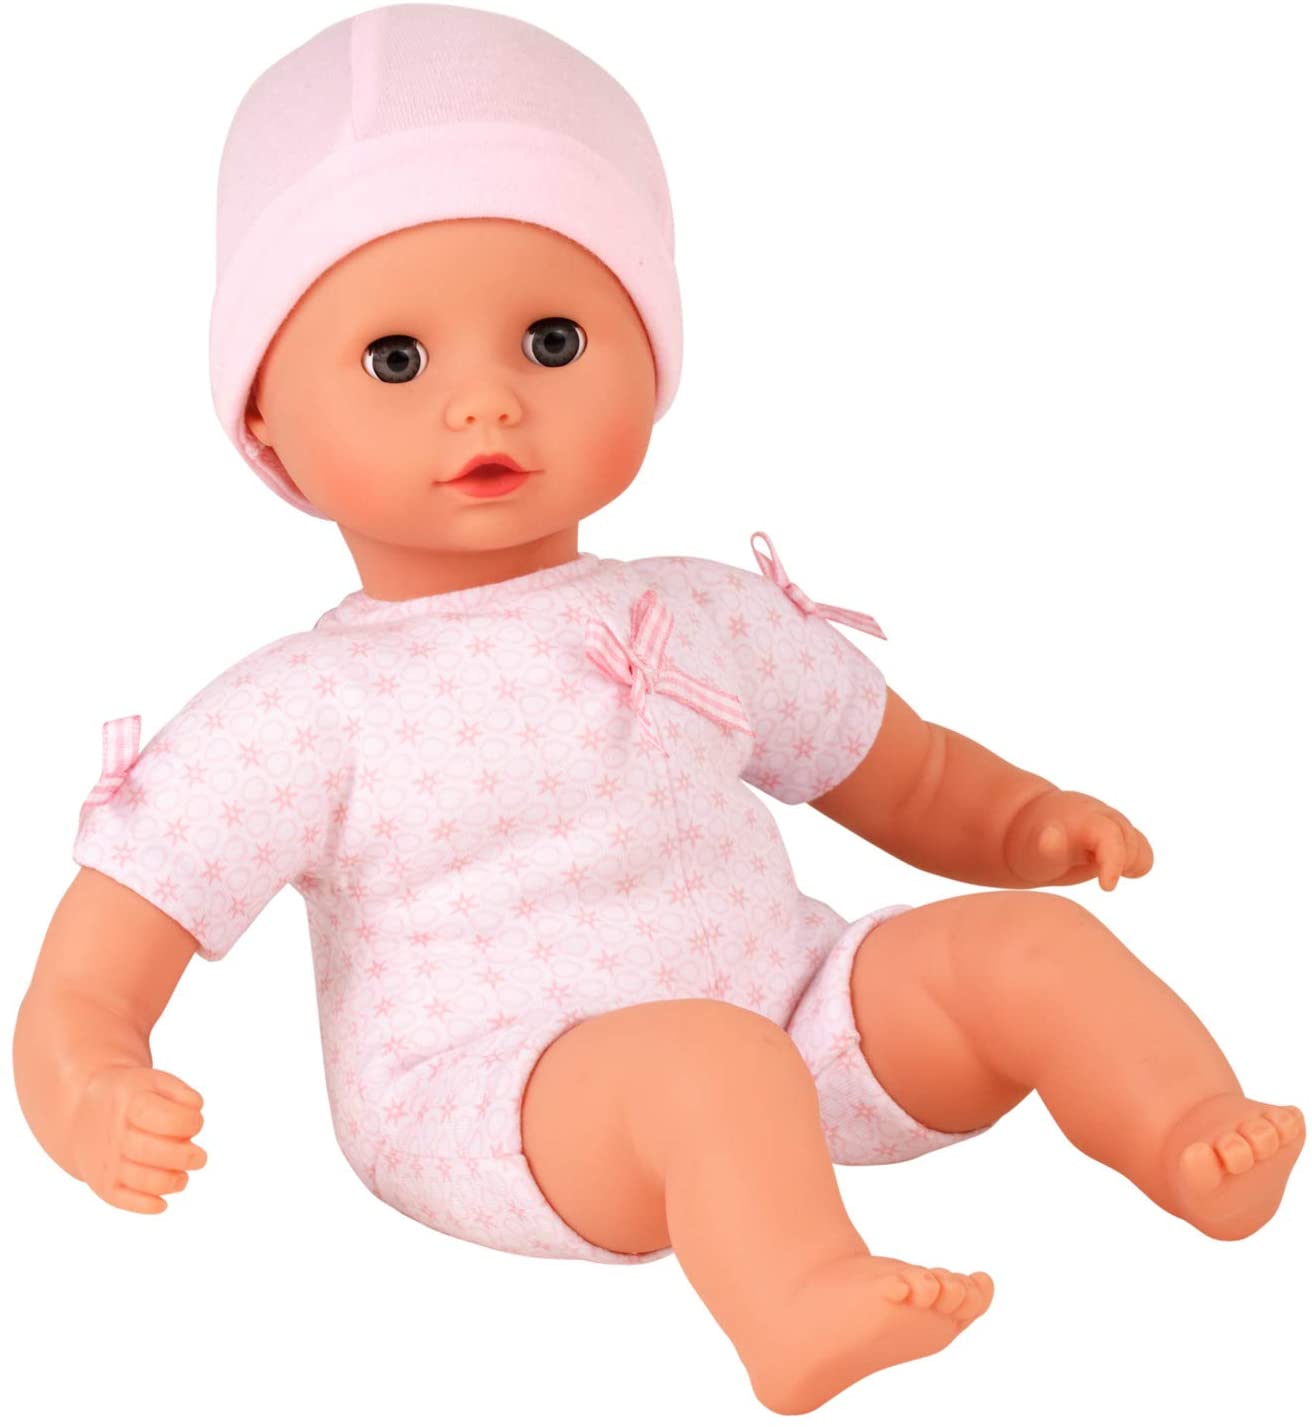 Bambole: Götz 3402926 Completo Dolce Vita - Abbigliamento Per Bambola  Misura Xl - Set 5 Pezzi Di Vestiti E Accessori Per Bambole In Piedi Alte  45-50 Cm